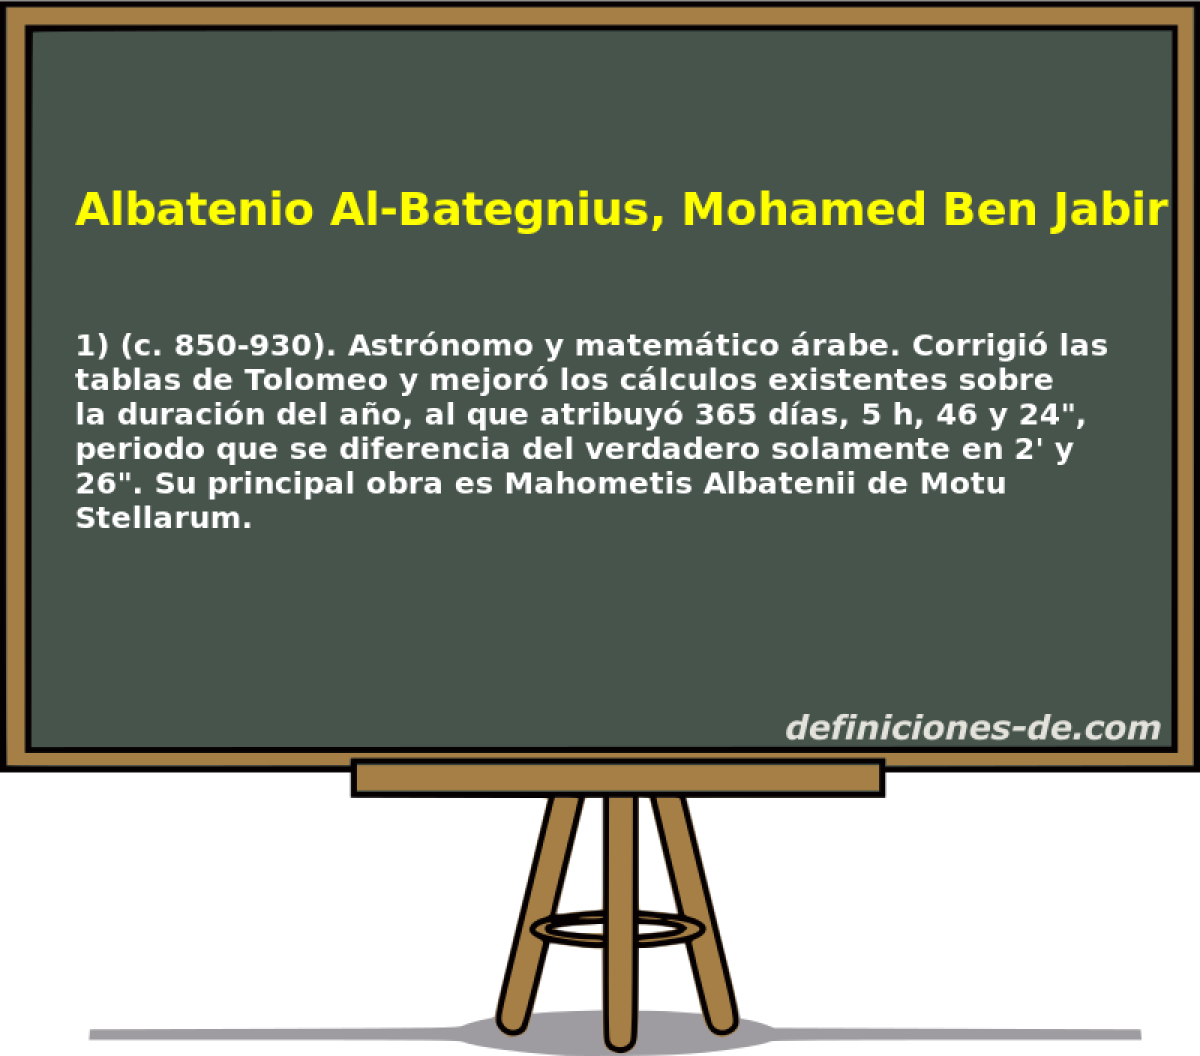 Albatenio Al-Bategnius, Mohamed Ben Jabir Ben 